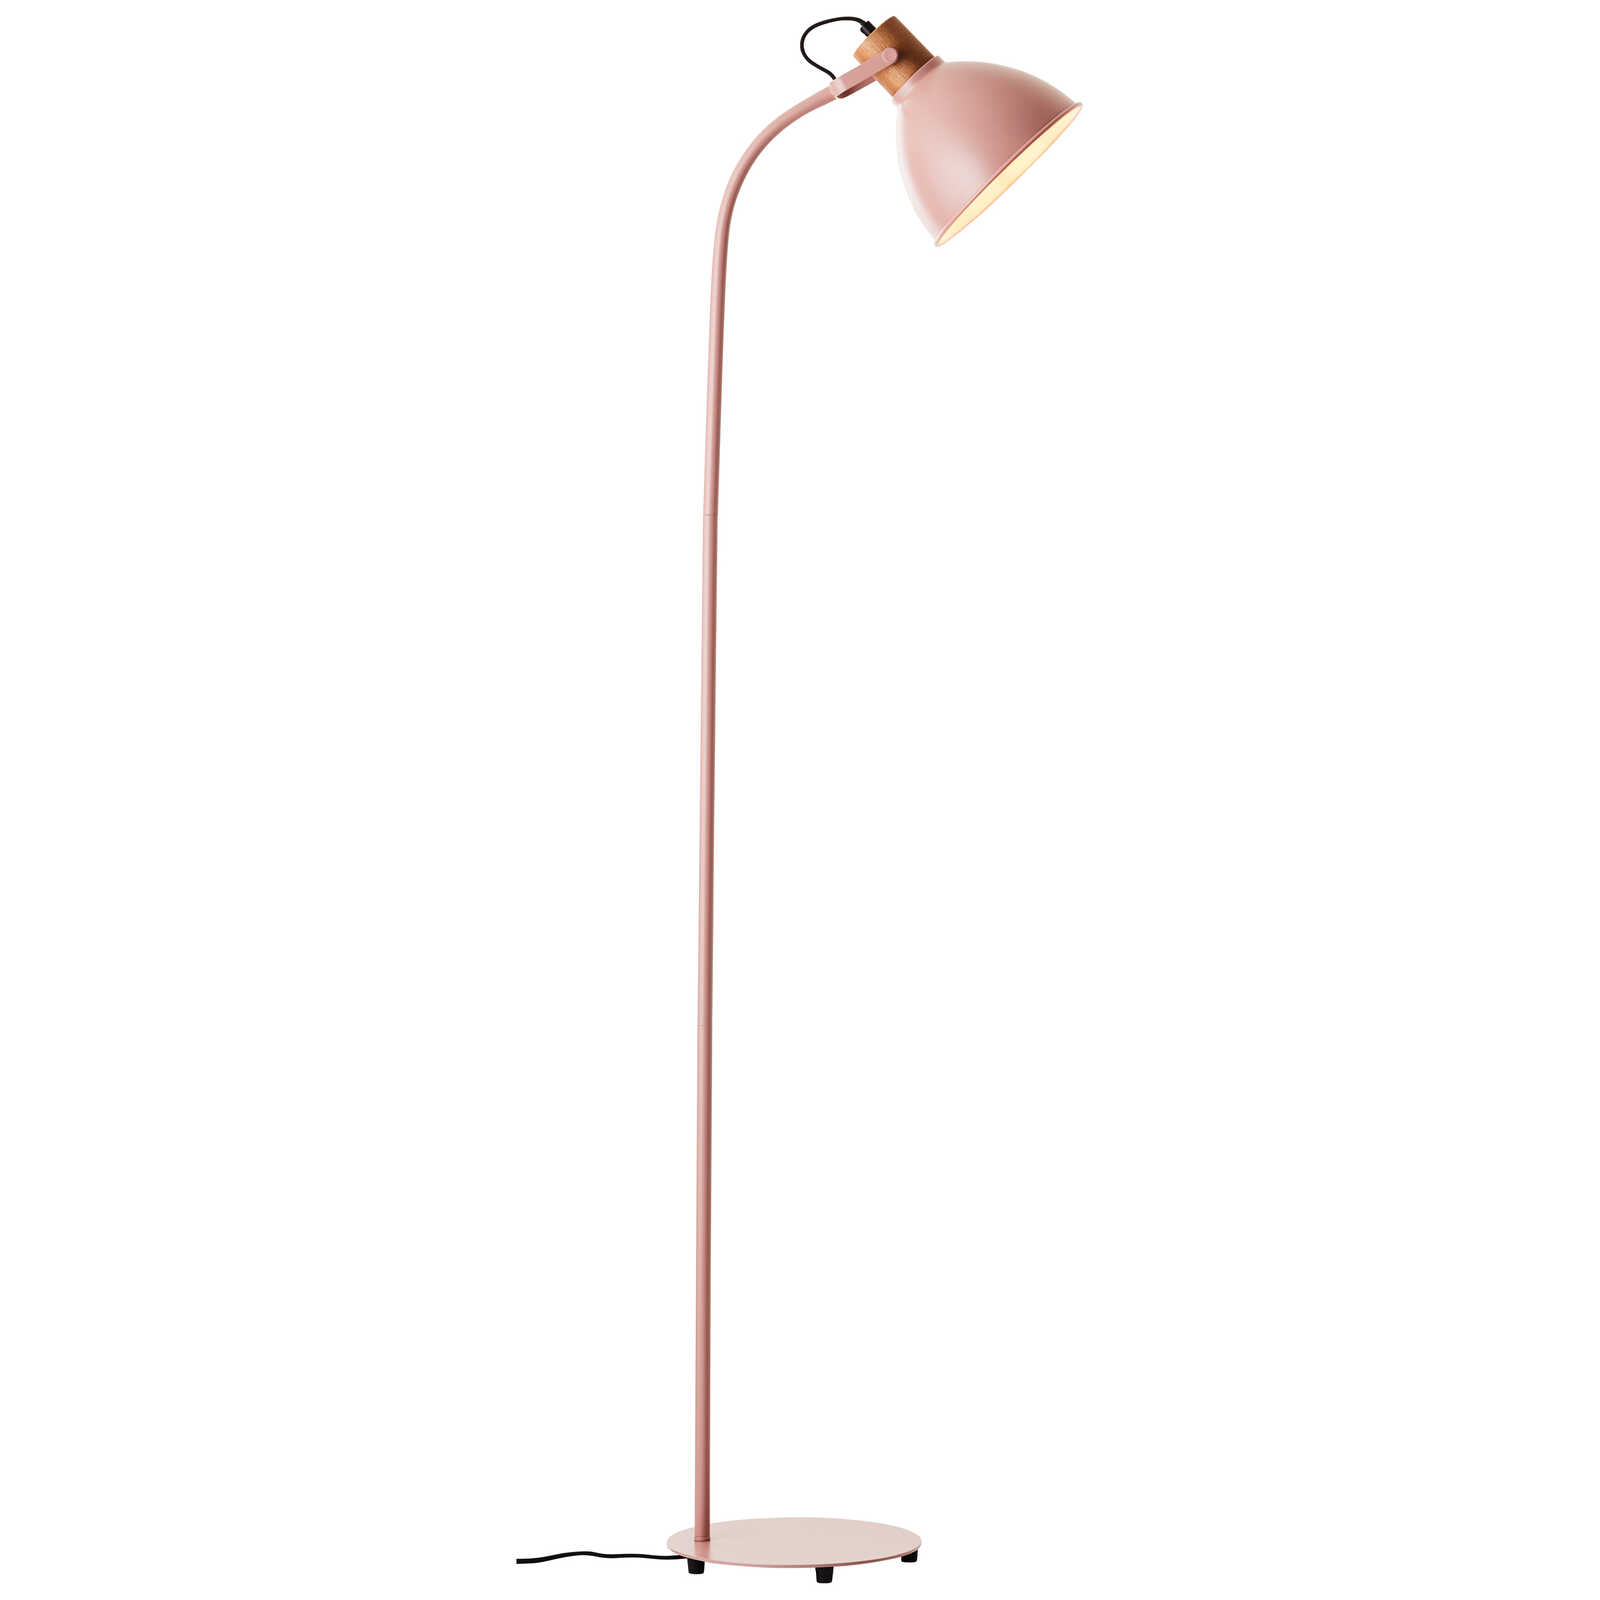             Houten vloerlamp - Franziska 7 - Roze
        